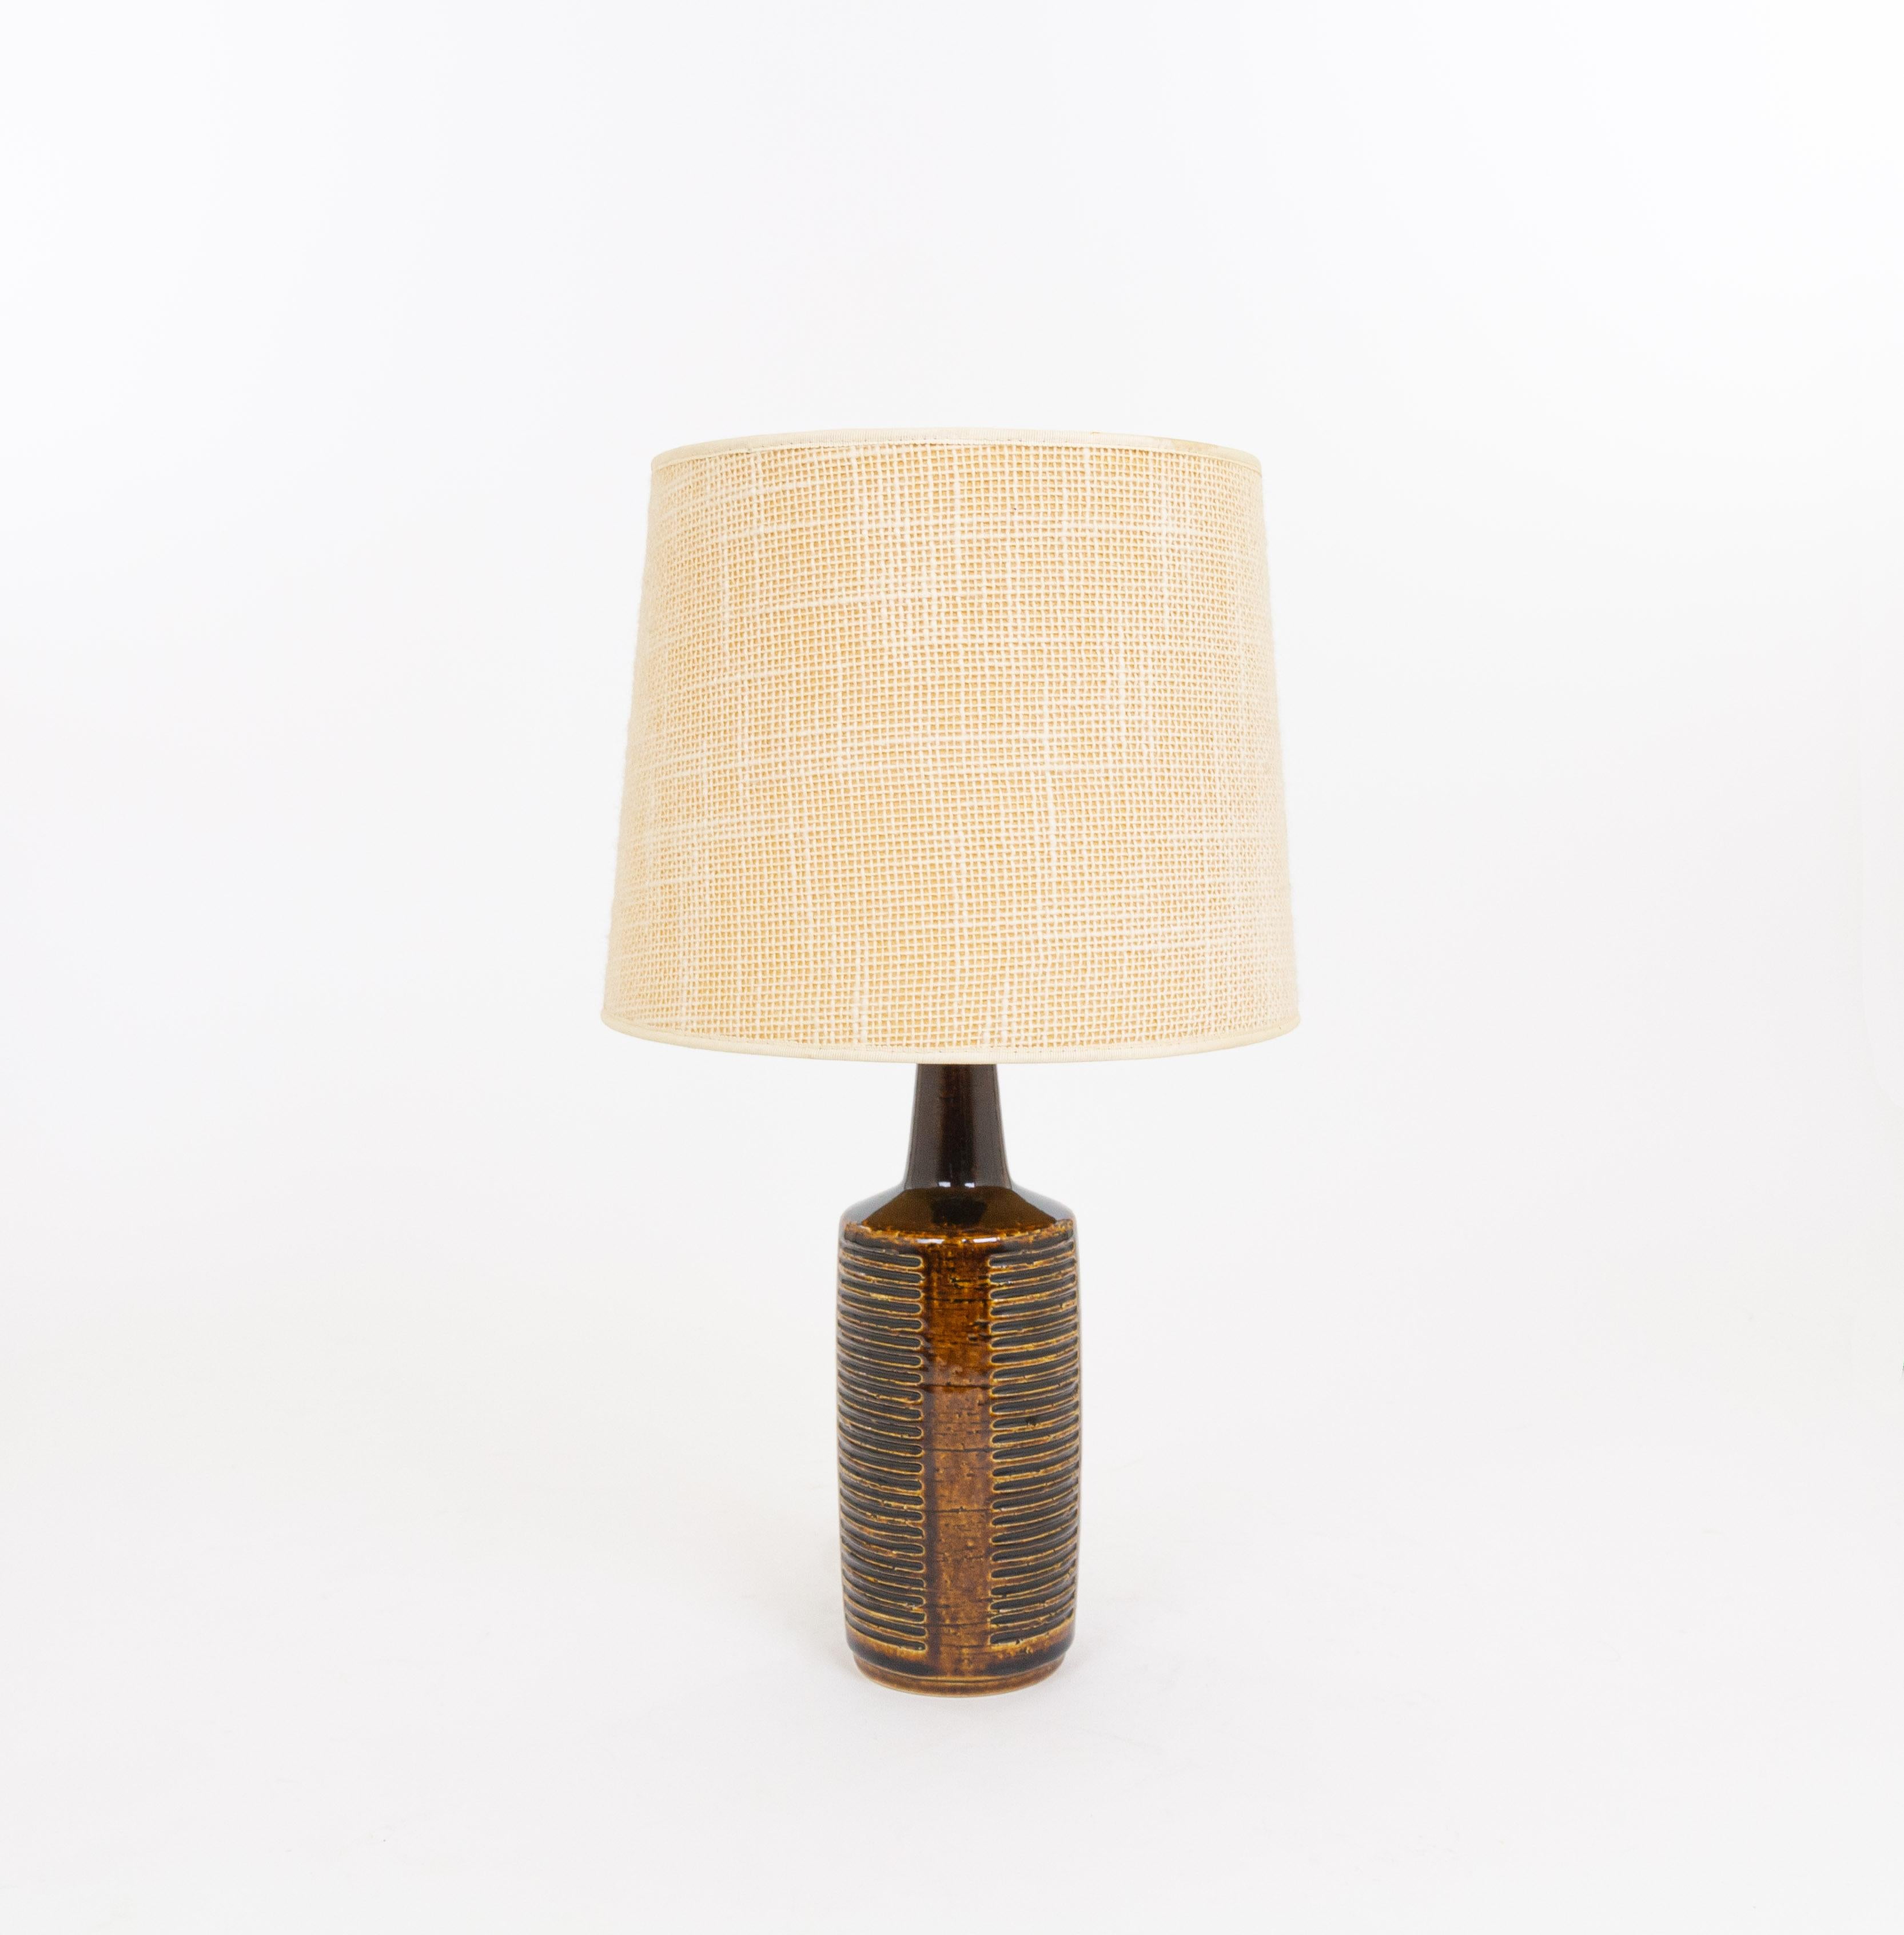 Lampe de table modèle DL/30 réalisée par Annelise et Per Linnemann-Schmidt pour Palshus dans les années 1960. La couleur de la base décorée à la main est Chestnut Brown. Il présente des motifs géométriques impressionnés.

La lampe est livrée avec